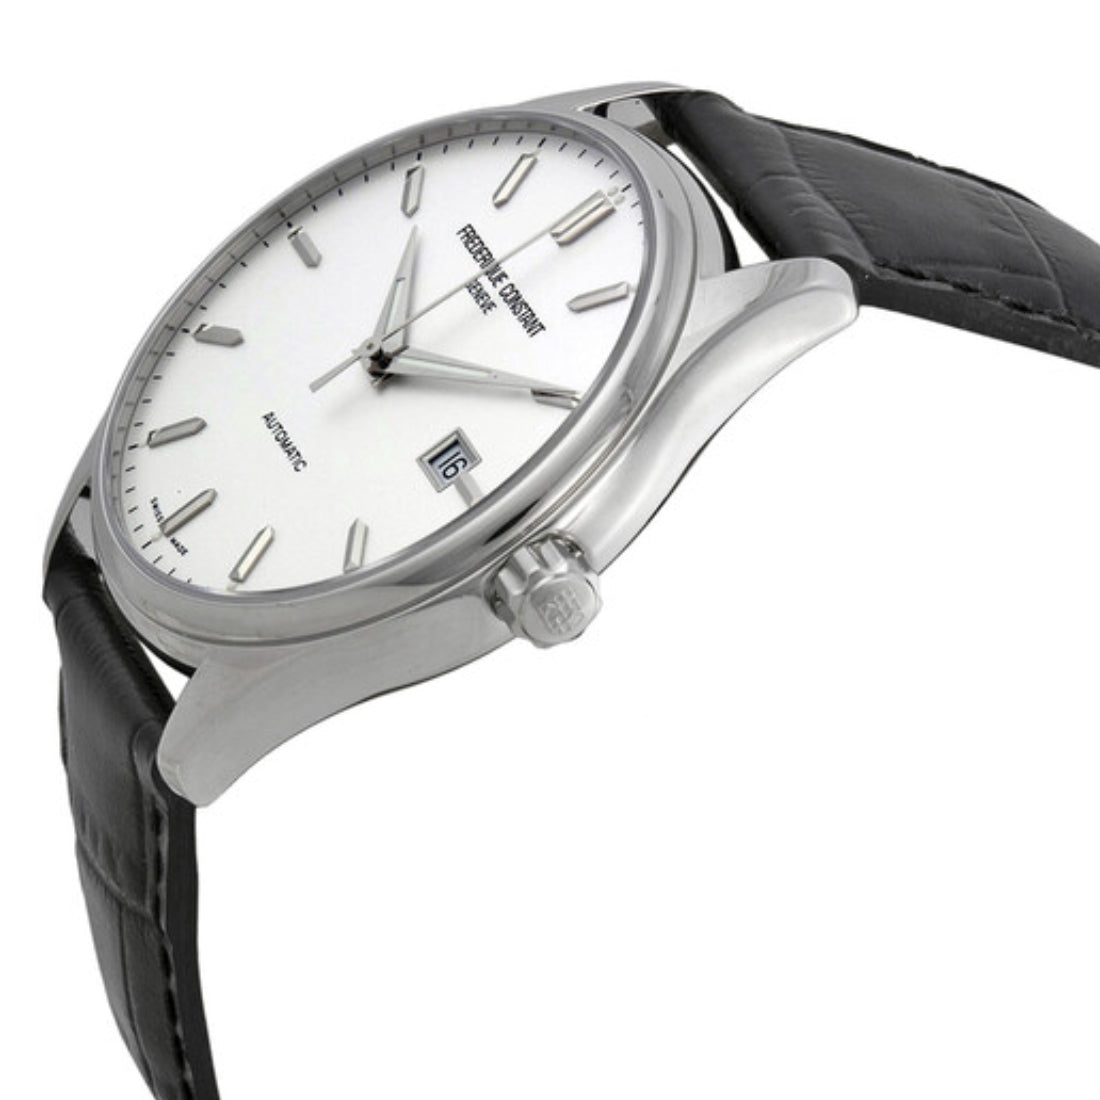 Frederique Constant Men's Automatic Movement White Dial Watch - FC-0035